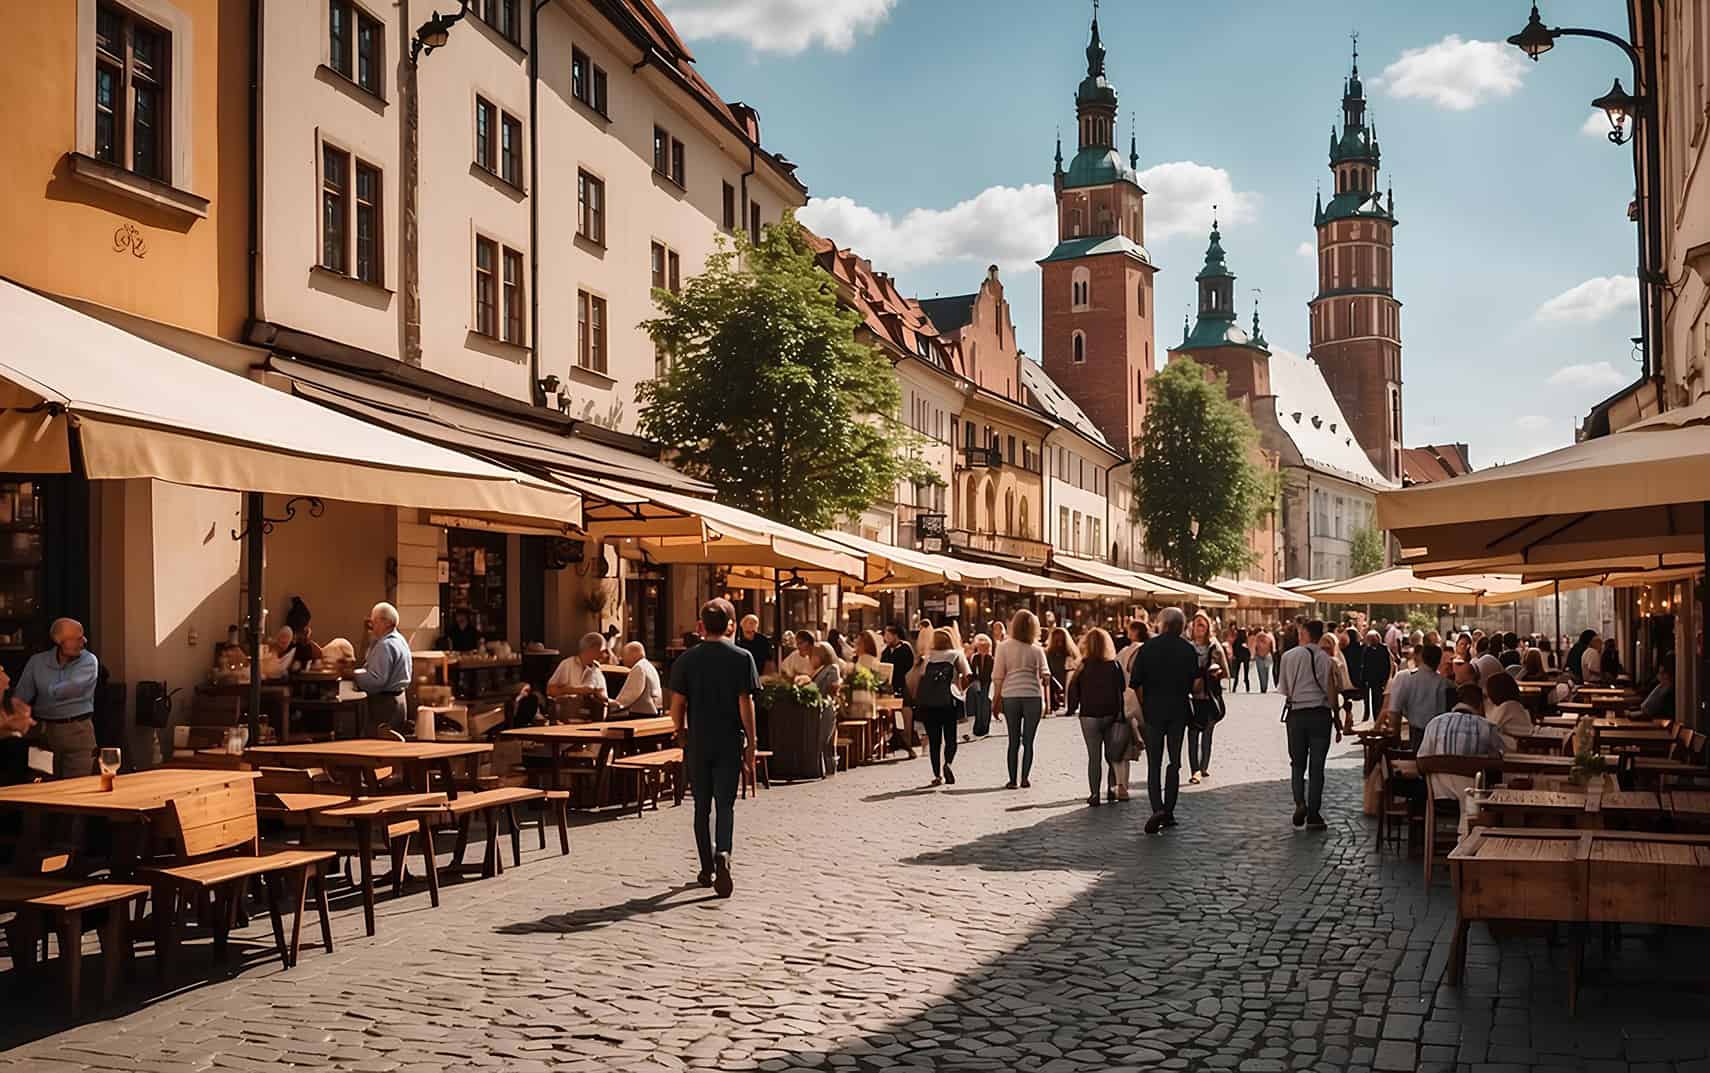 The Best Hostels in Krakow: Find A Great Hostel In The Heart of Krakow